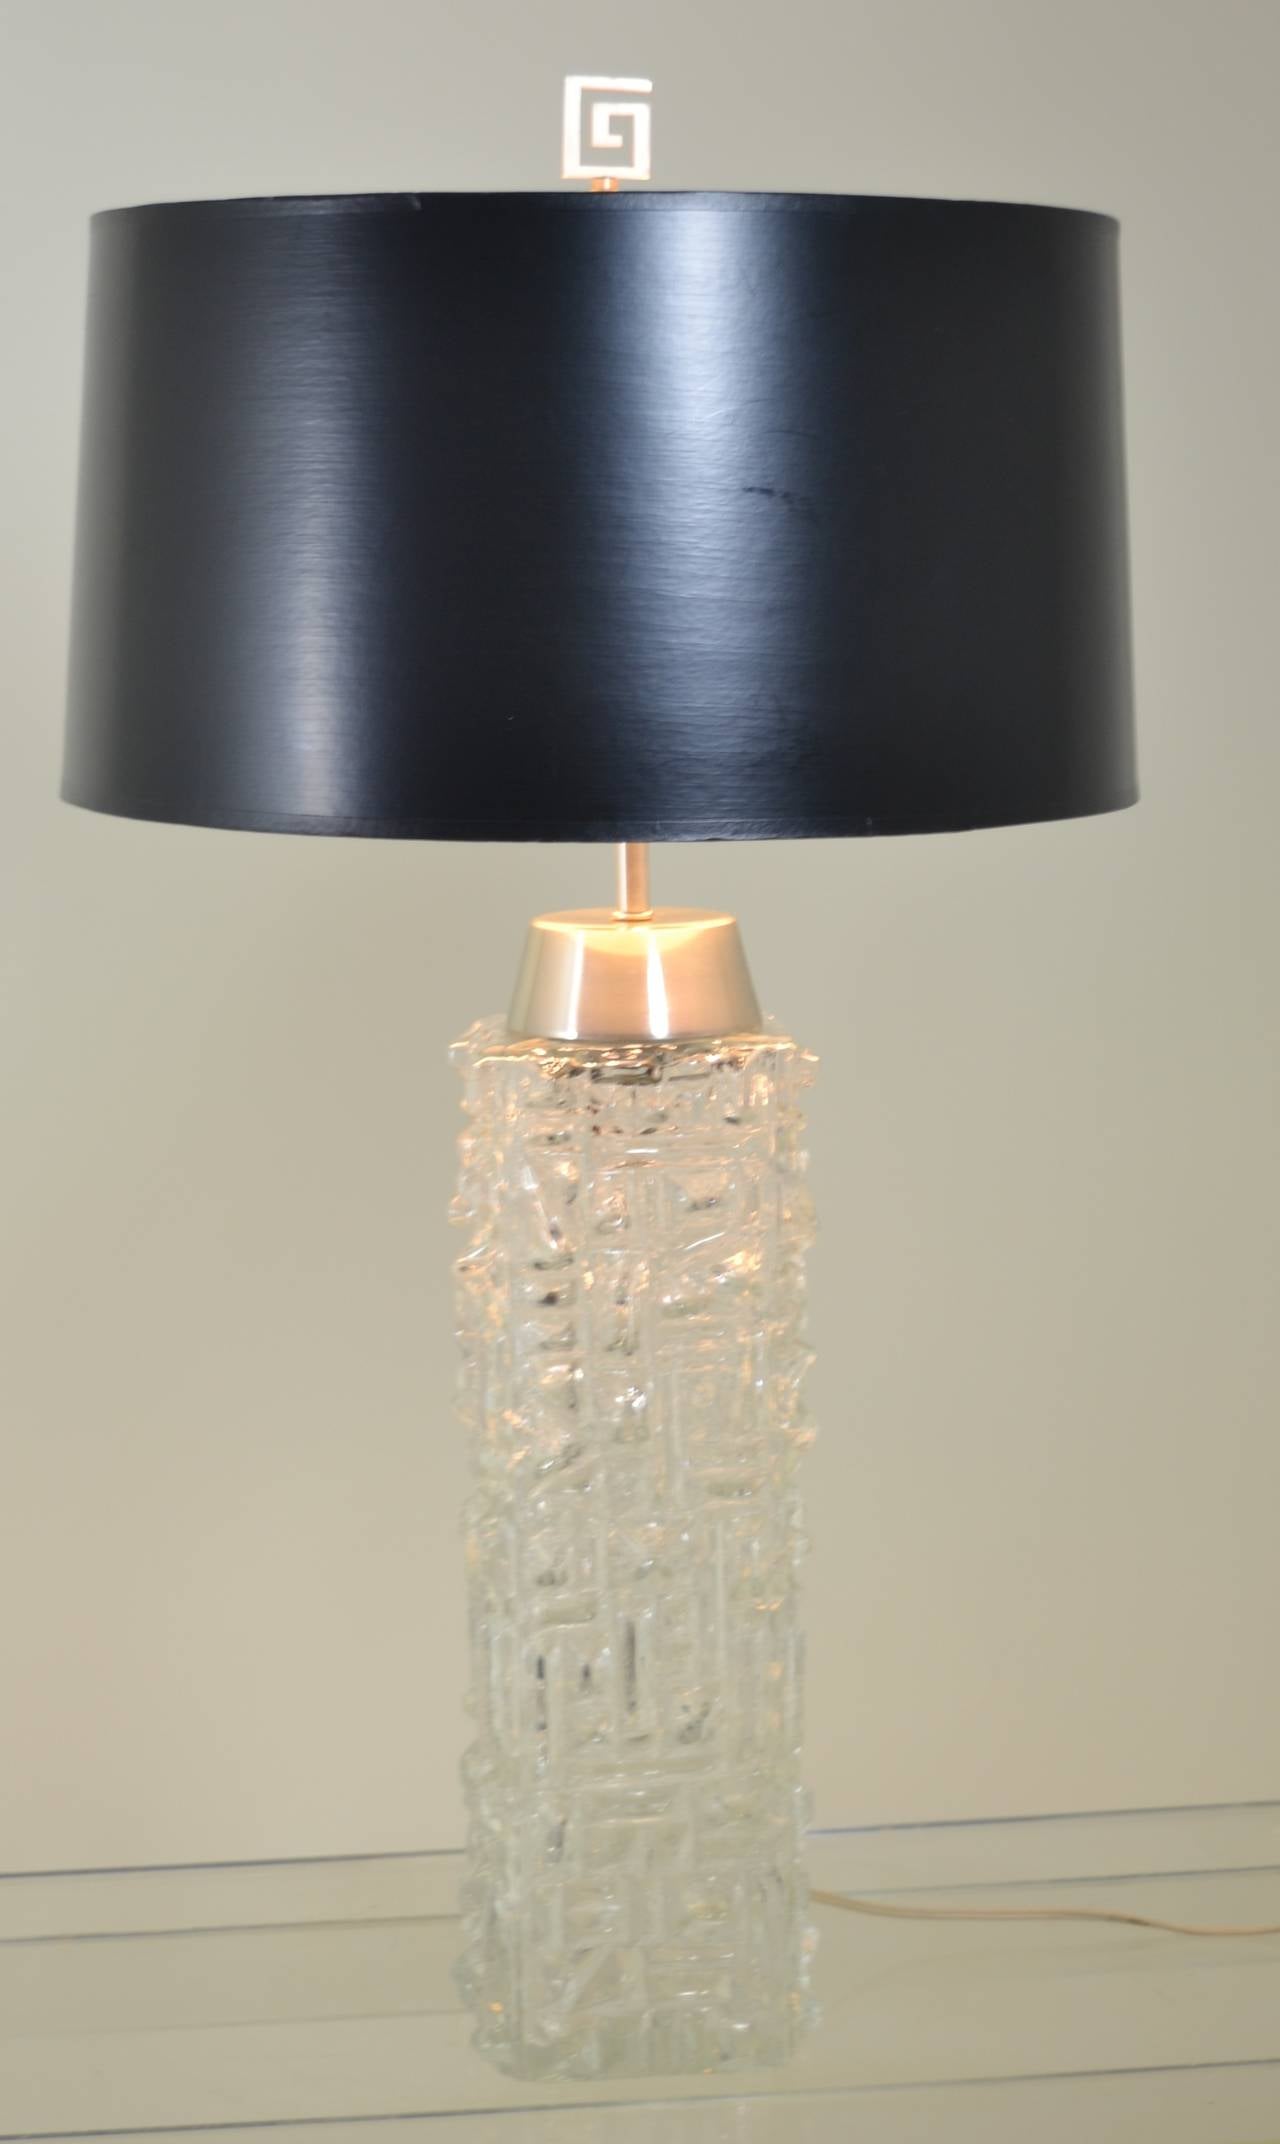 pukeberg lamp